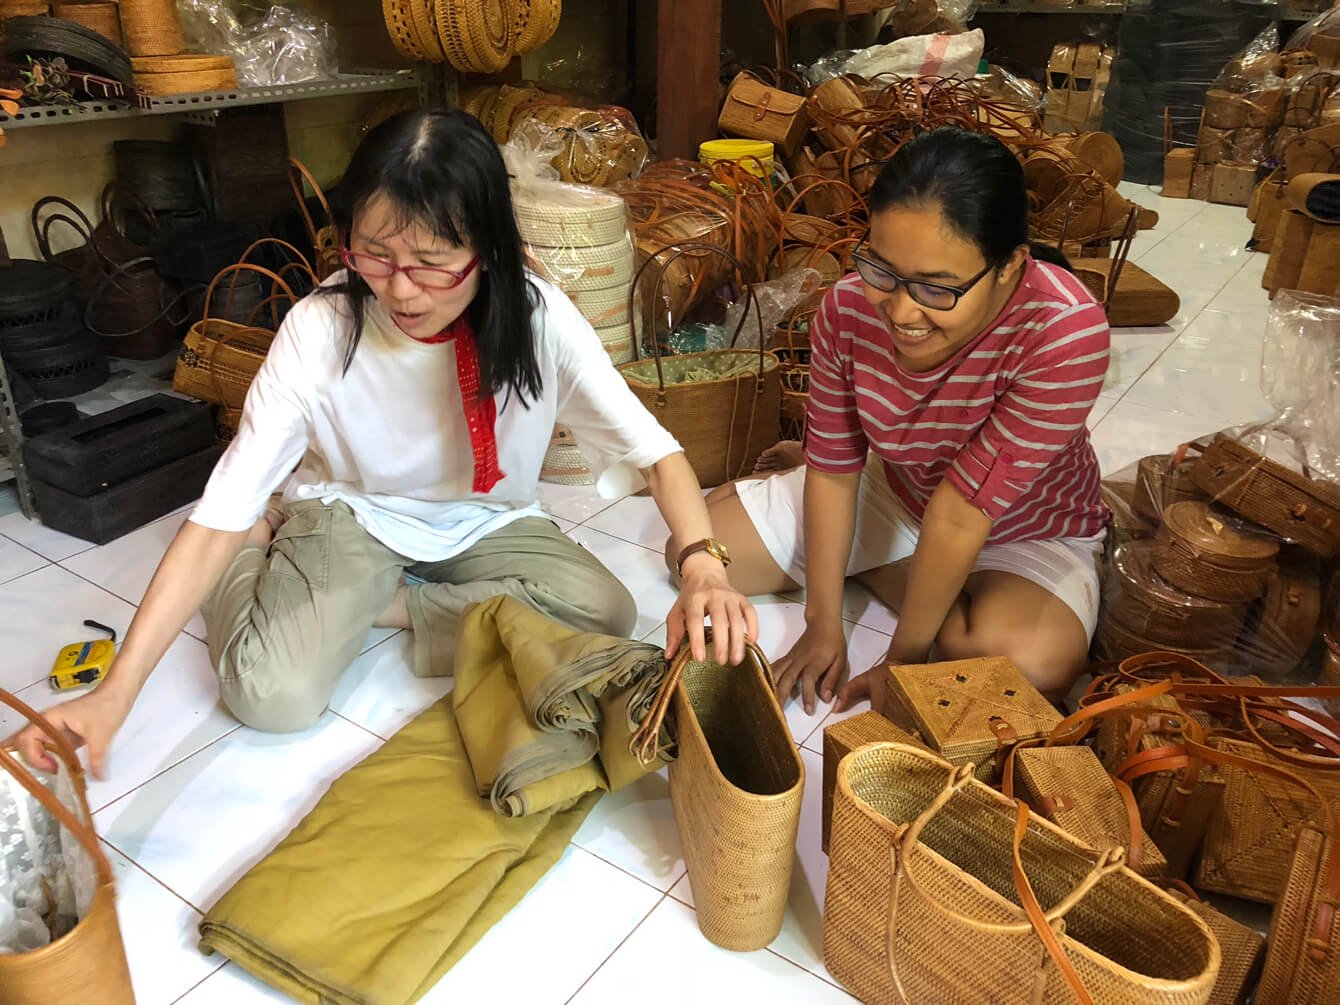 インドネシアで作られているアタ製品とは？原材料や歴史やお手入れについても詳しく紹介 かご・バスケット・雑貨の通販 おもてなでしこ（竹・ラタン・柳・ アタ・ウッドチップなどの素材）卸・仕入れにも対応